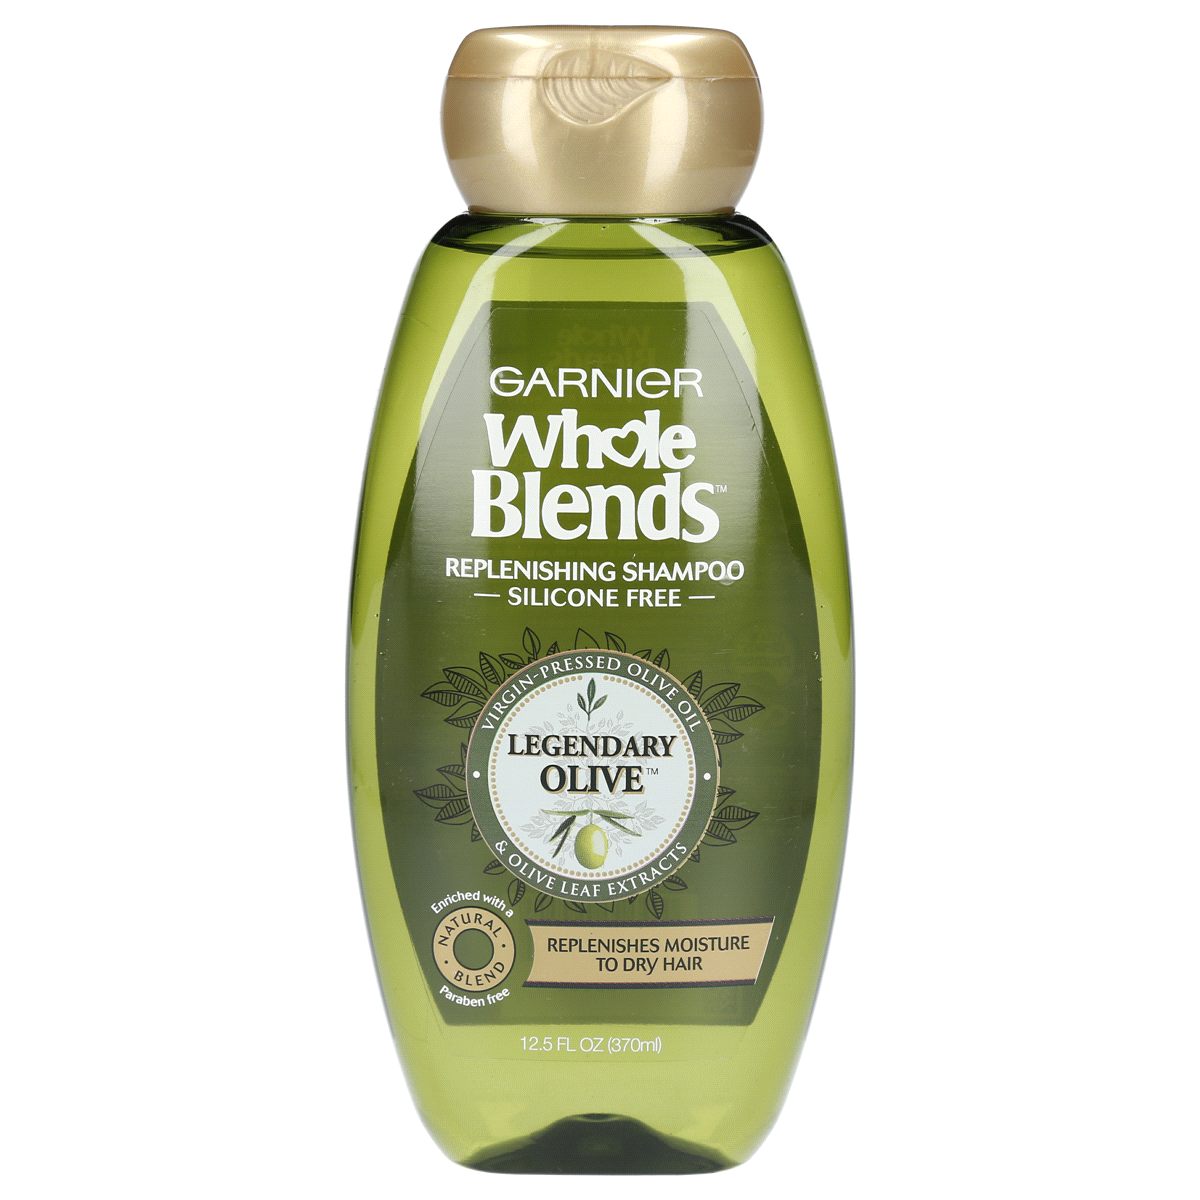 slide 1 of 6, Garnier Whole Blends Legendary Olive Replenishing Shampoo, 12.5 fl oz